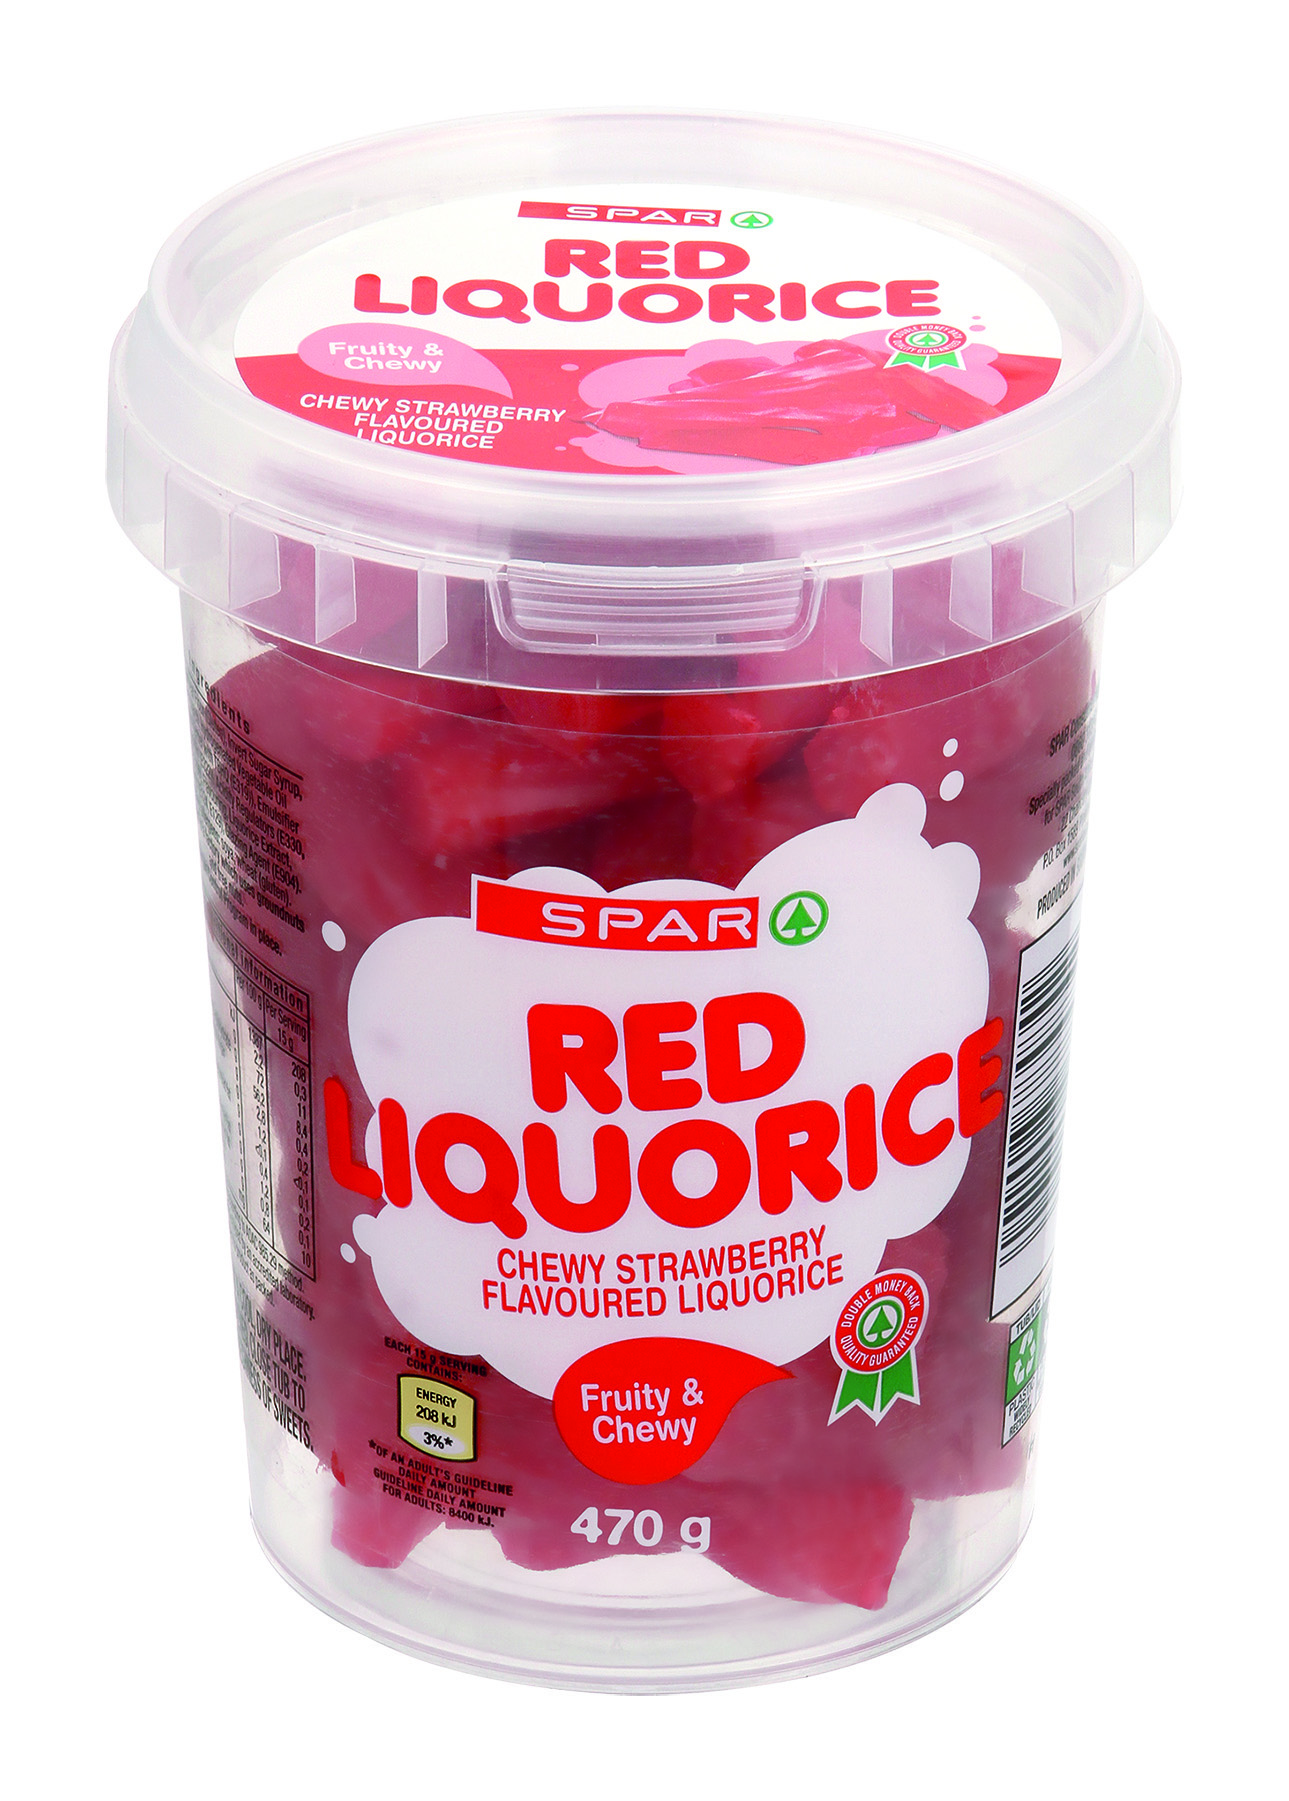 red liquorice